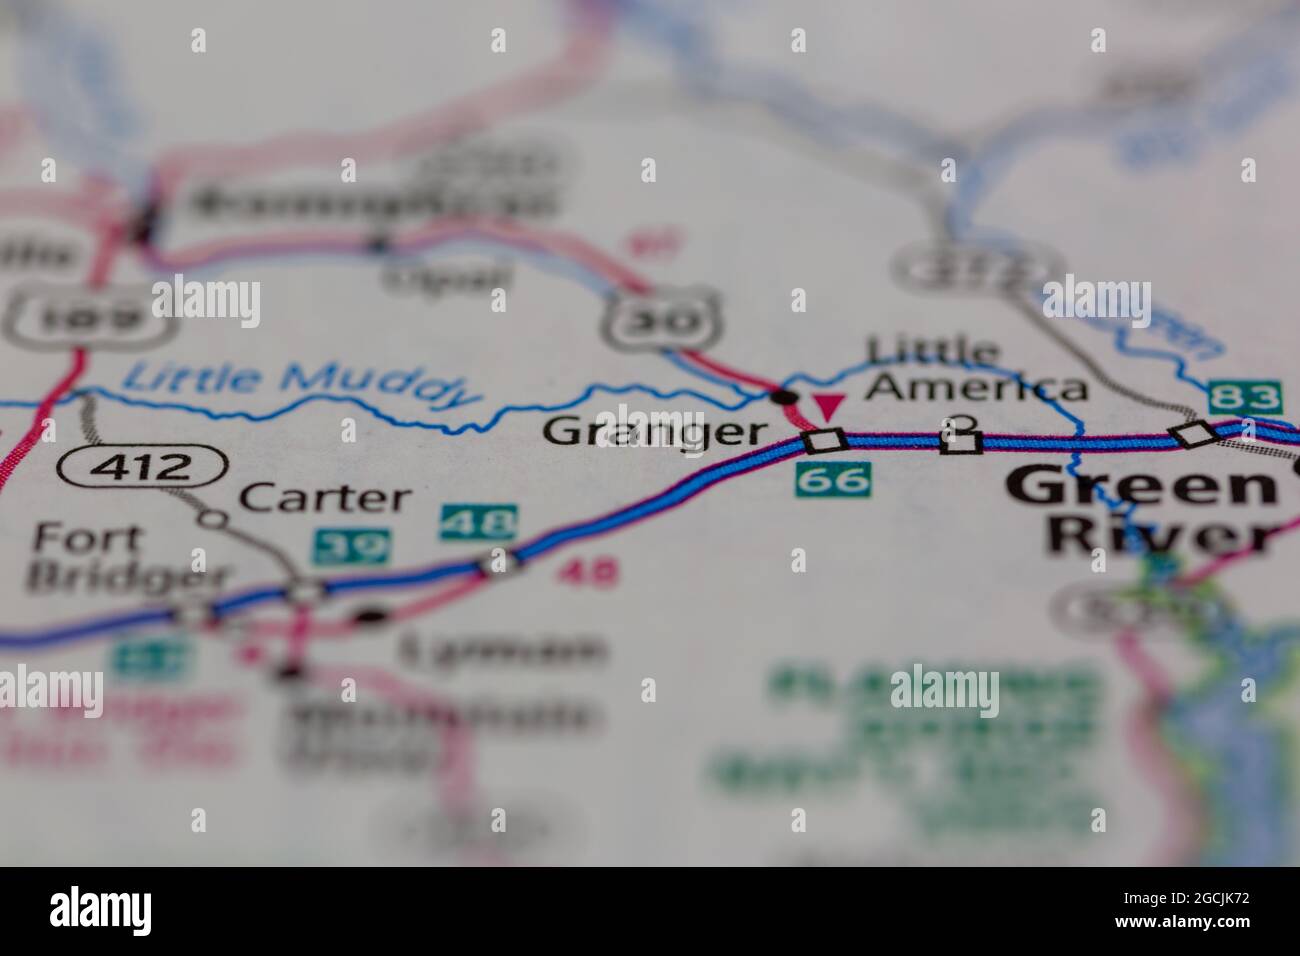 Granger Wyoming USA indiqué sur une carte routière ou une carte de la géographie Banque D'Images